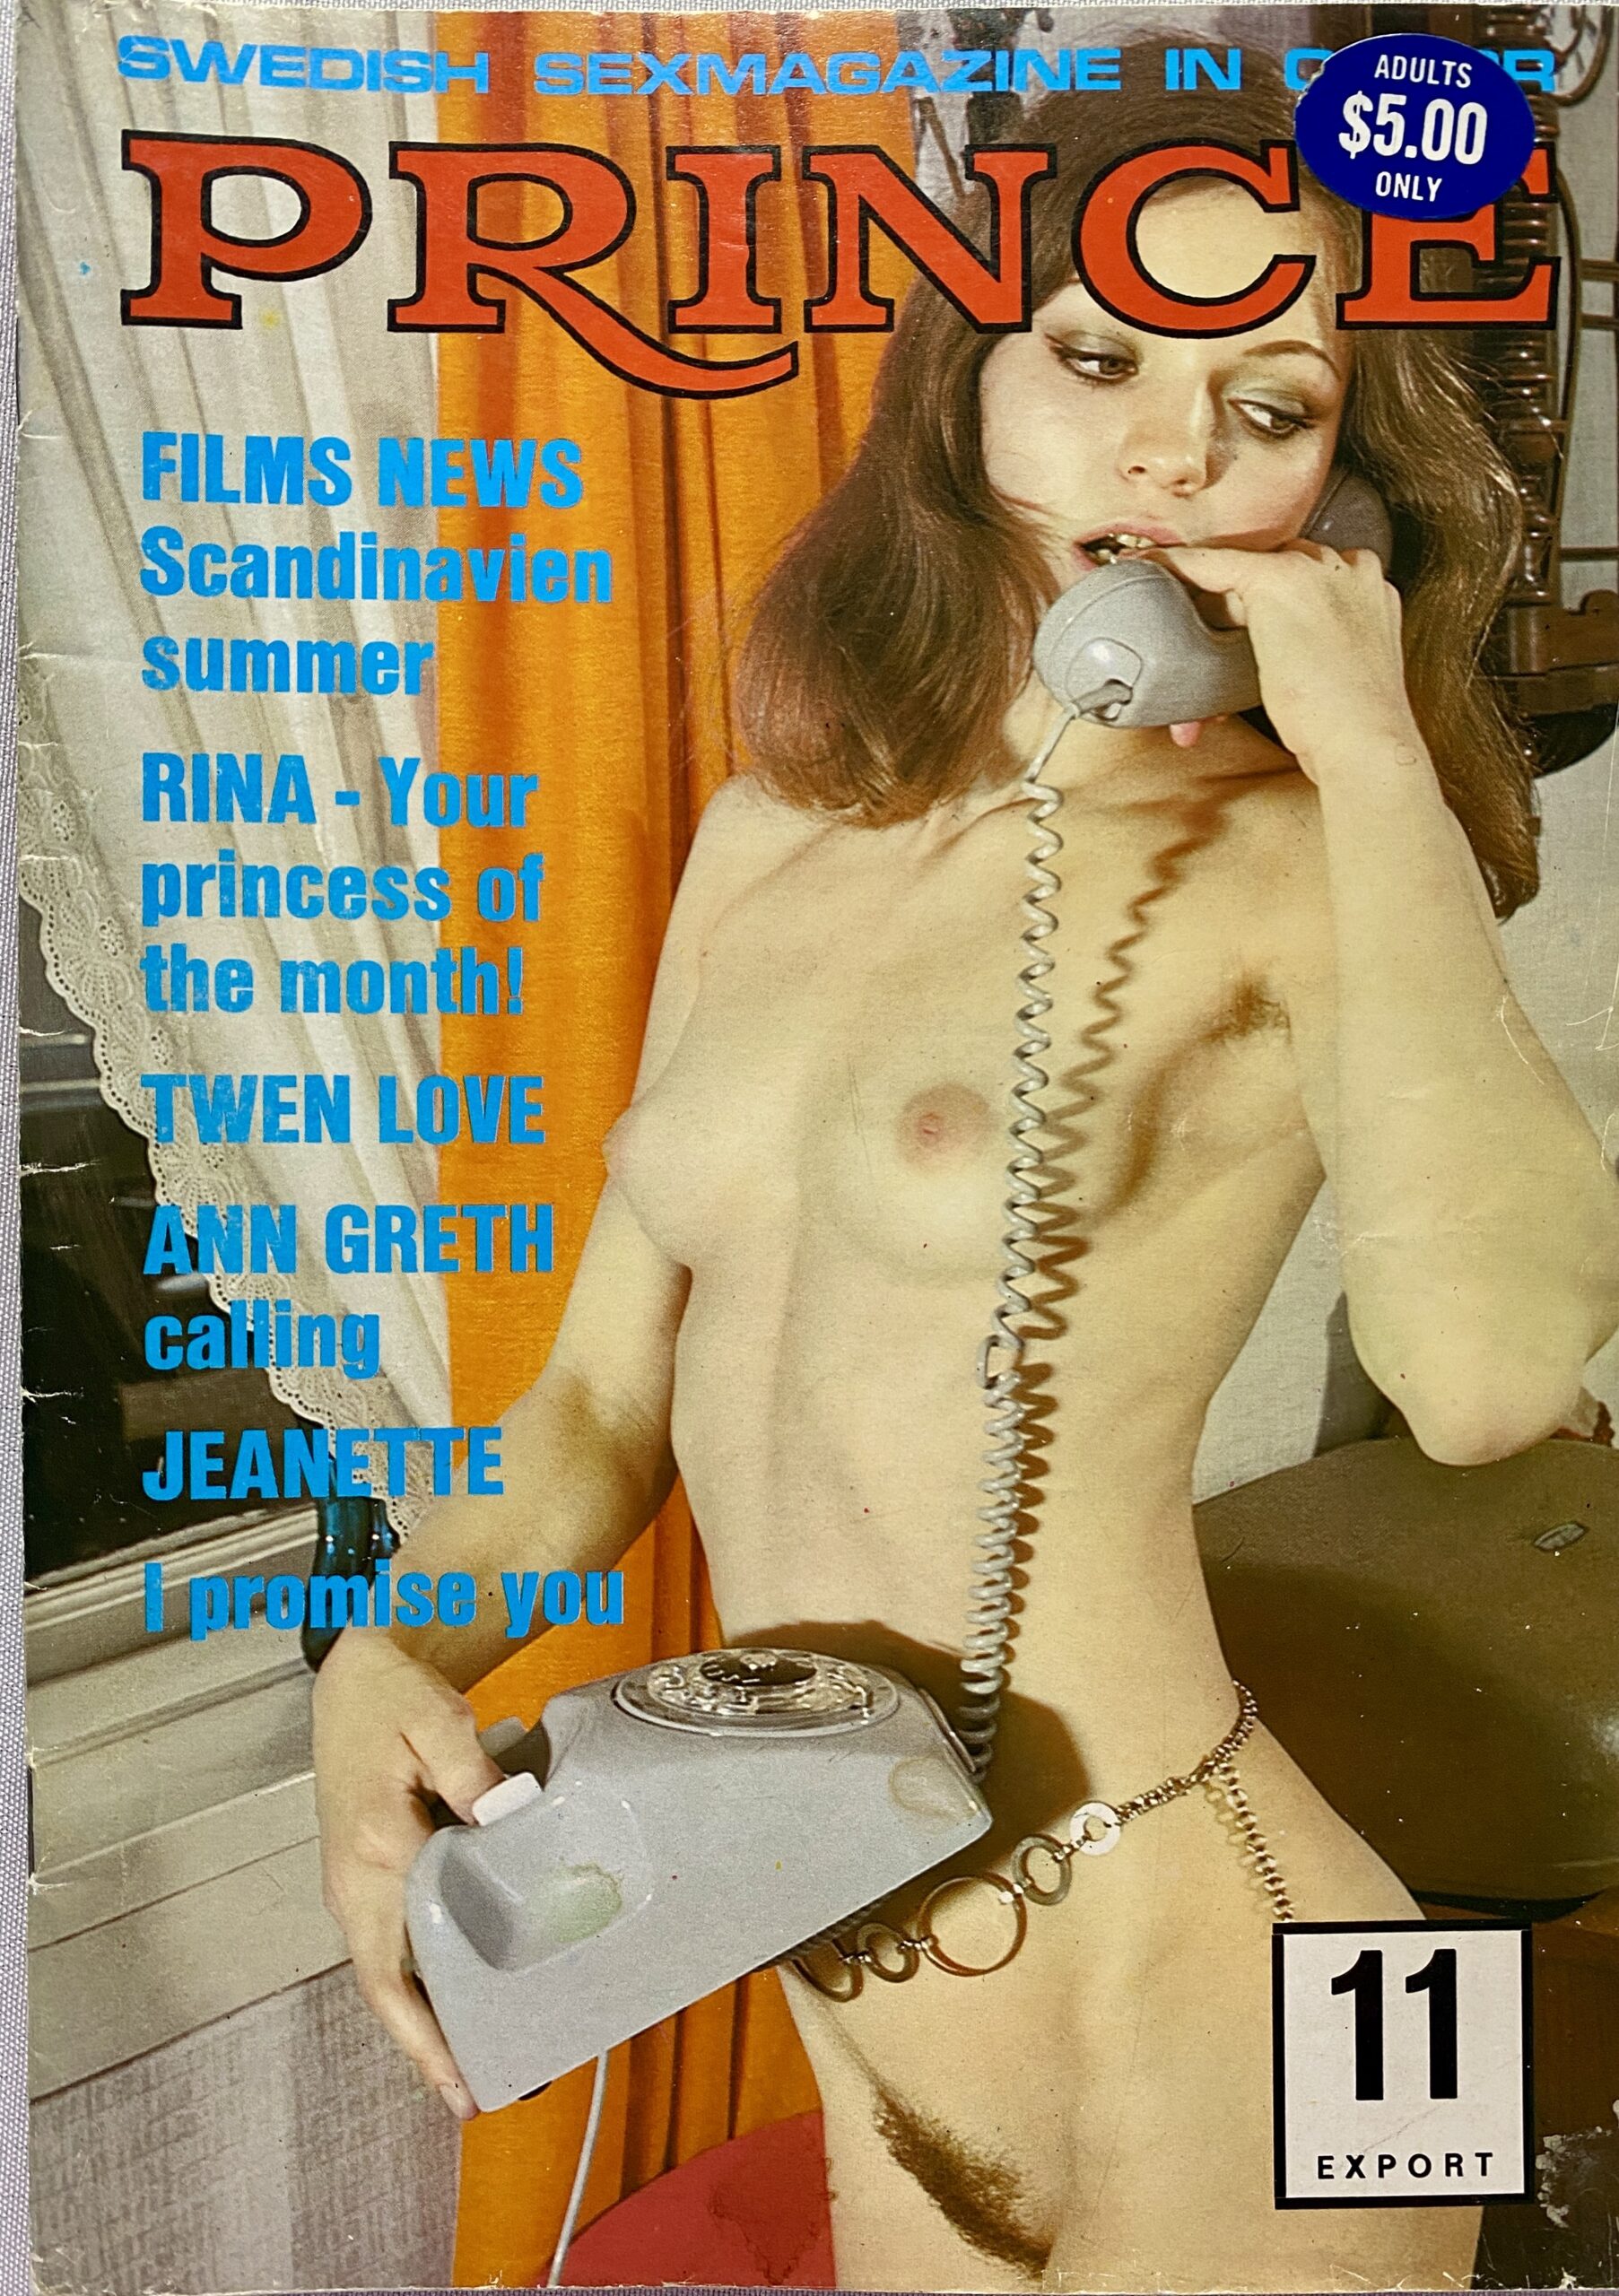 1970's porn magazines